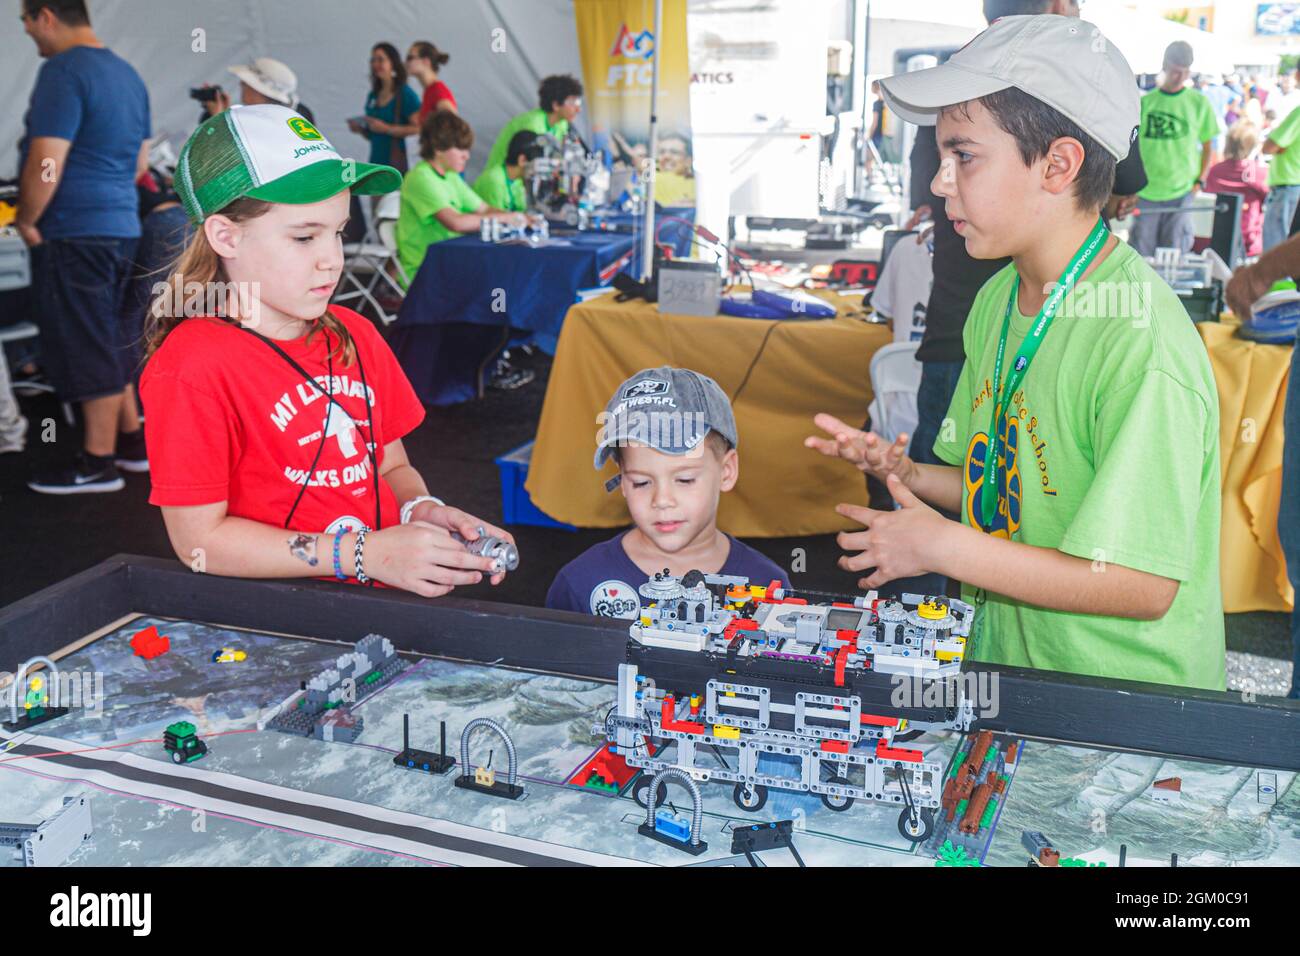 Miami Florida, Homestead Speedway, DARPA Robotics Challenge Trials, exposición de robots chicos, hermano mayor enseñando a niñas niños hermanos Foto de stock